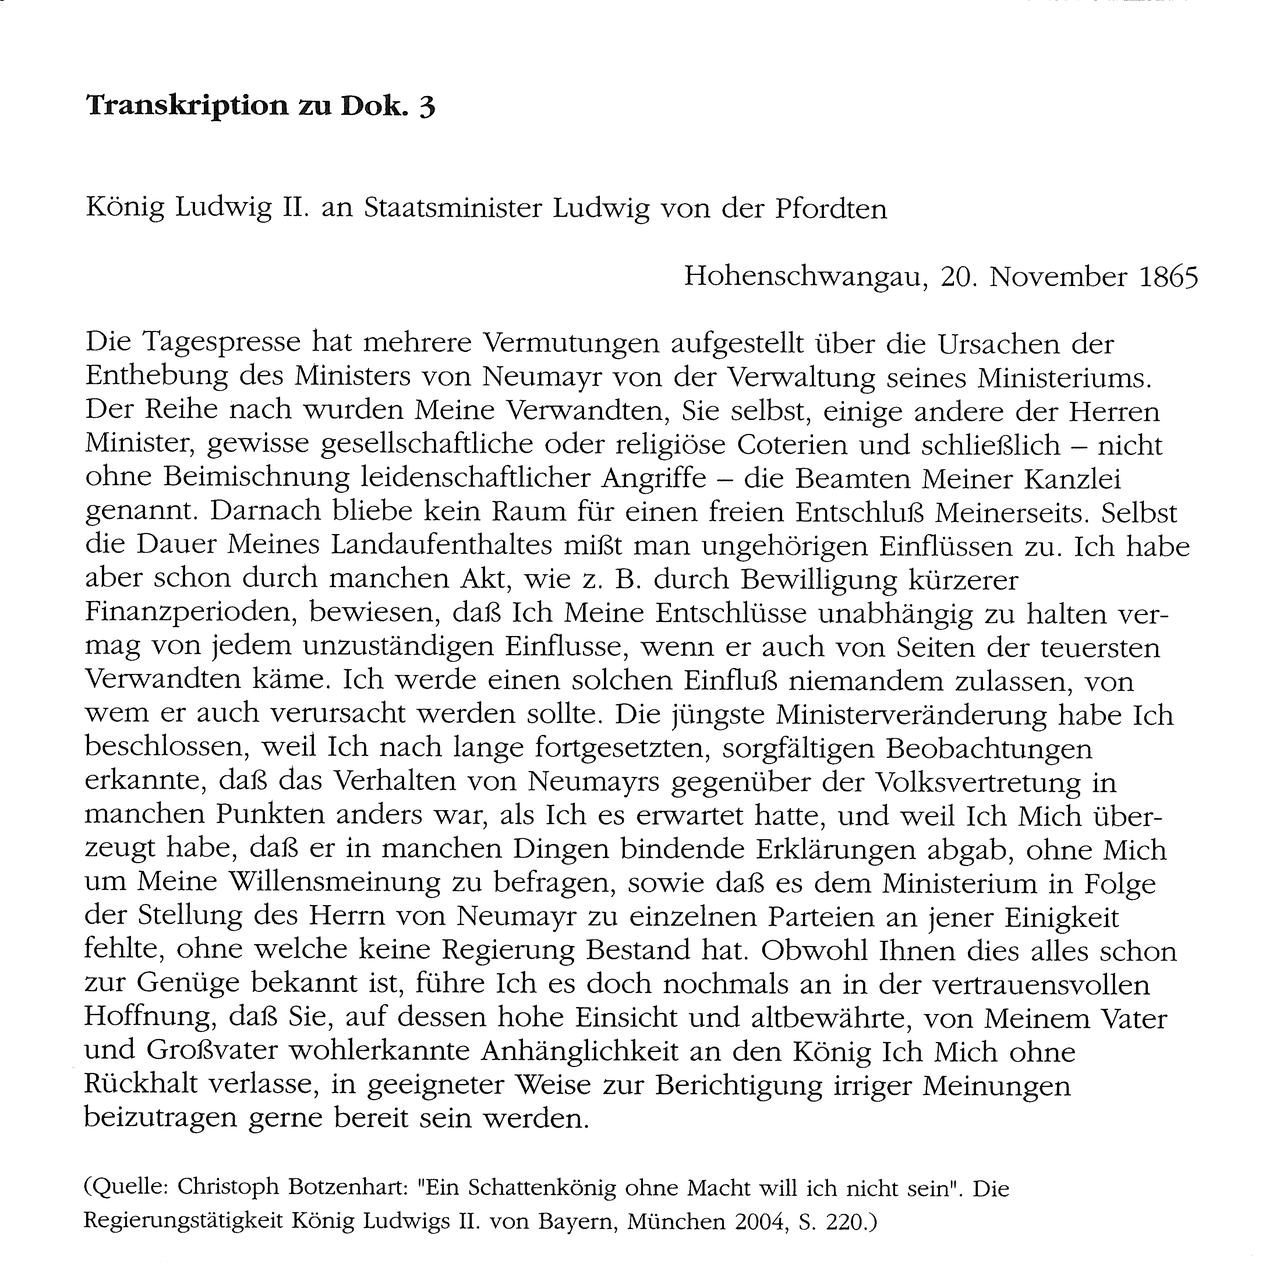 TRANSKRIPTION des Briefes König Ludwigs II. an Staatsminister von der Pfordten vom 20. November 1865 (Dok. 3)